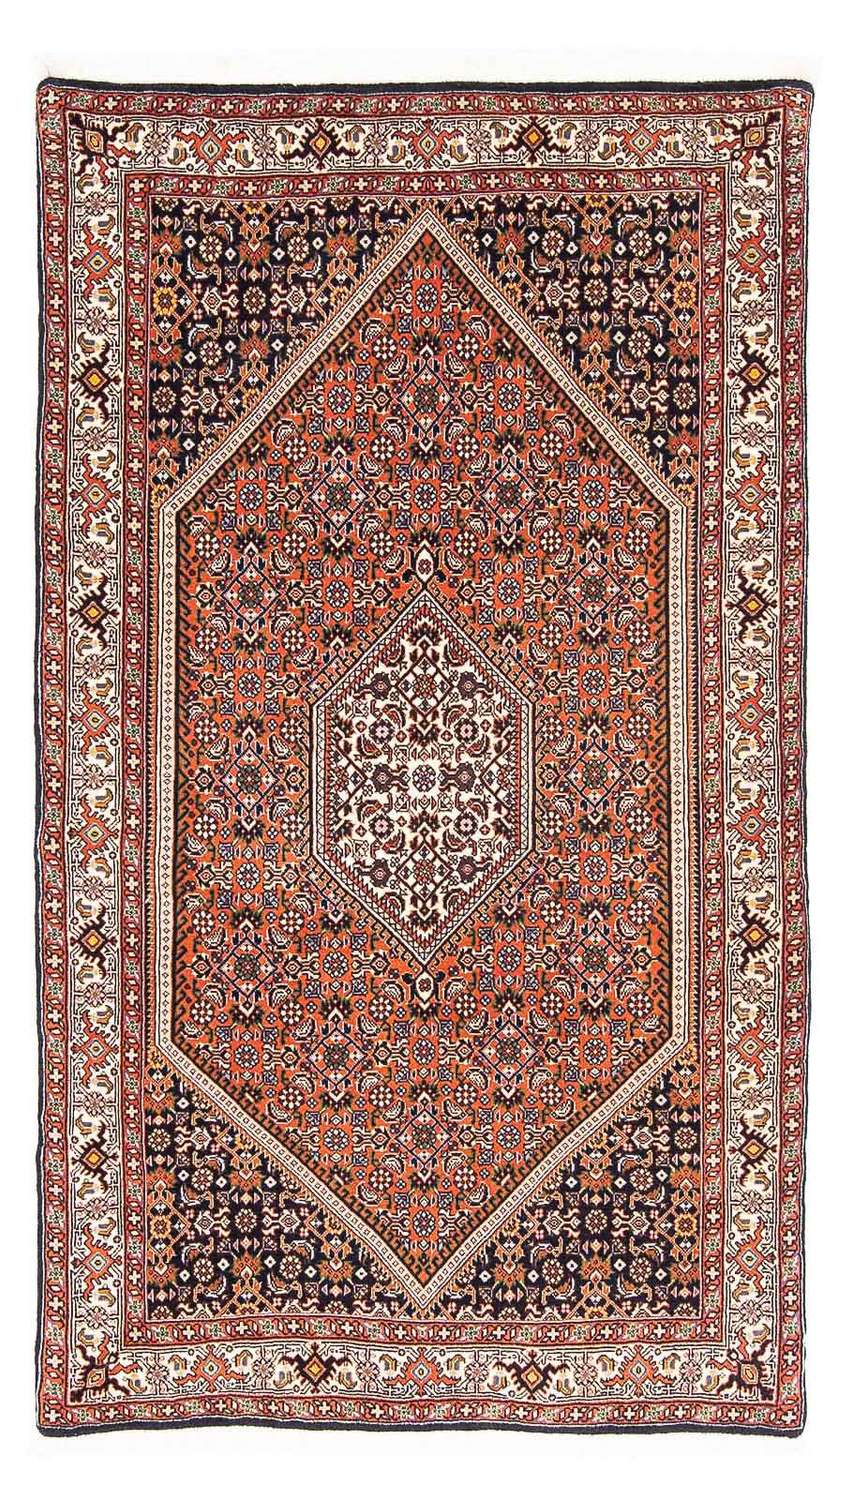 Persisk matta - Bijar - 169 x 105 cm - lax